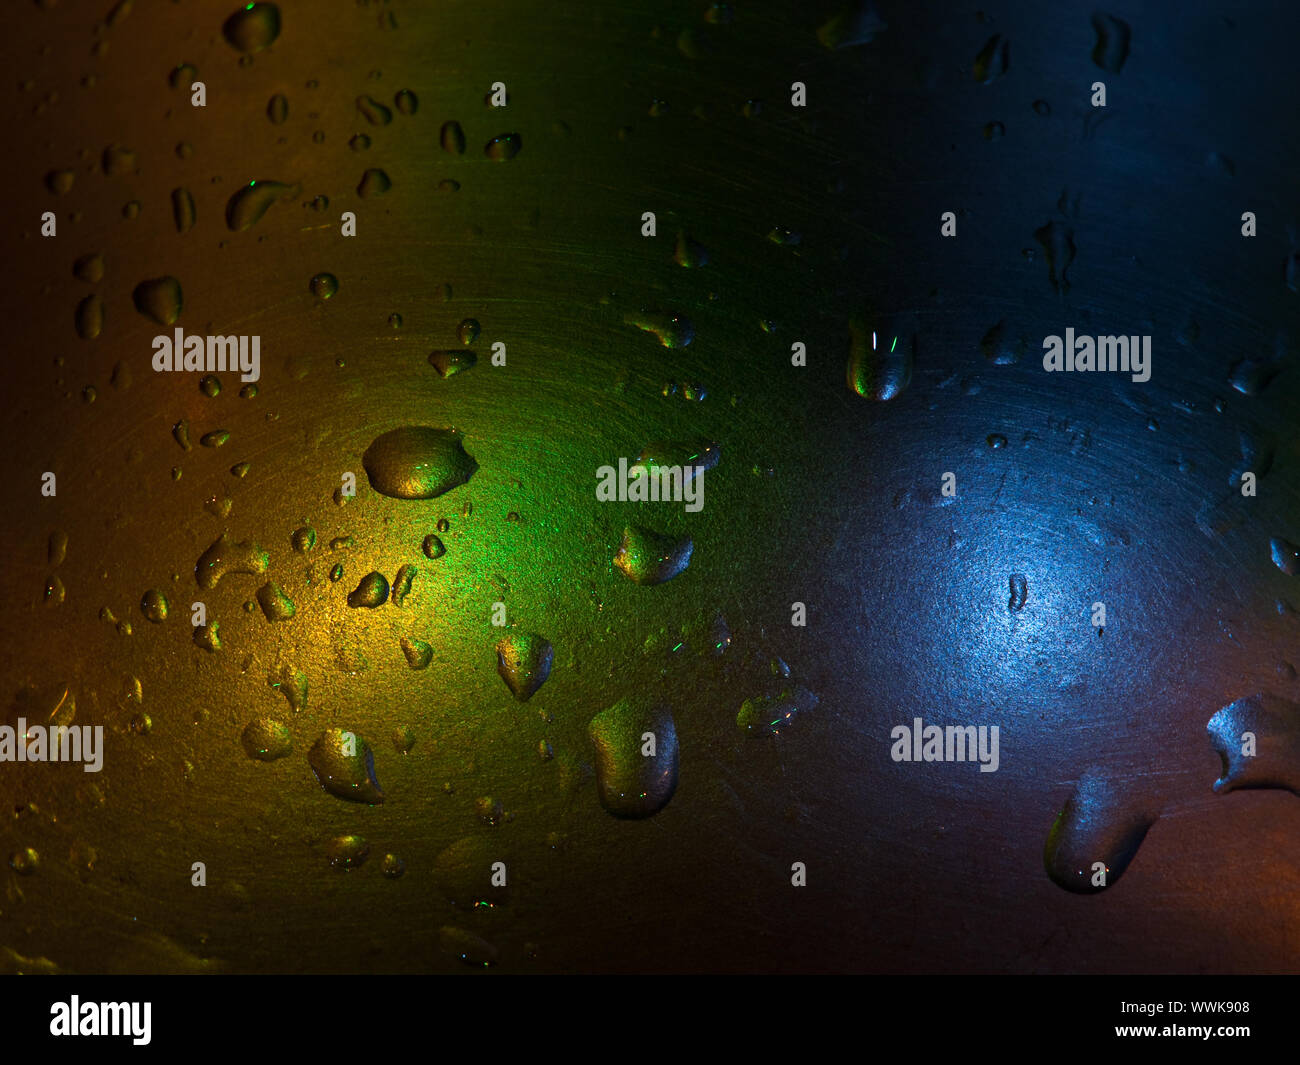 Gotas de agua sobre superficie metálica iluminada con luces de colores Stock Photo